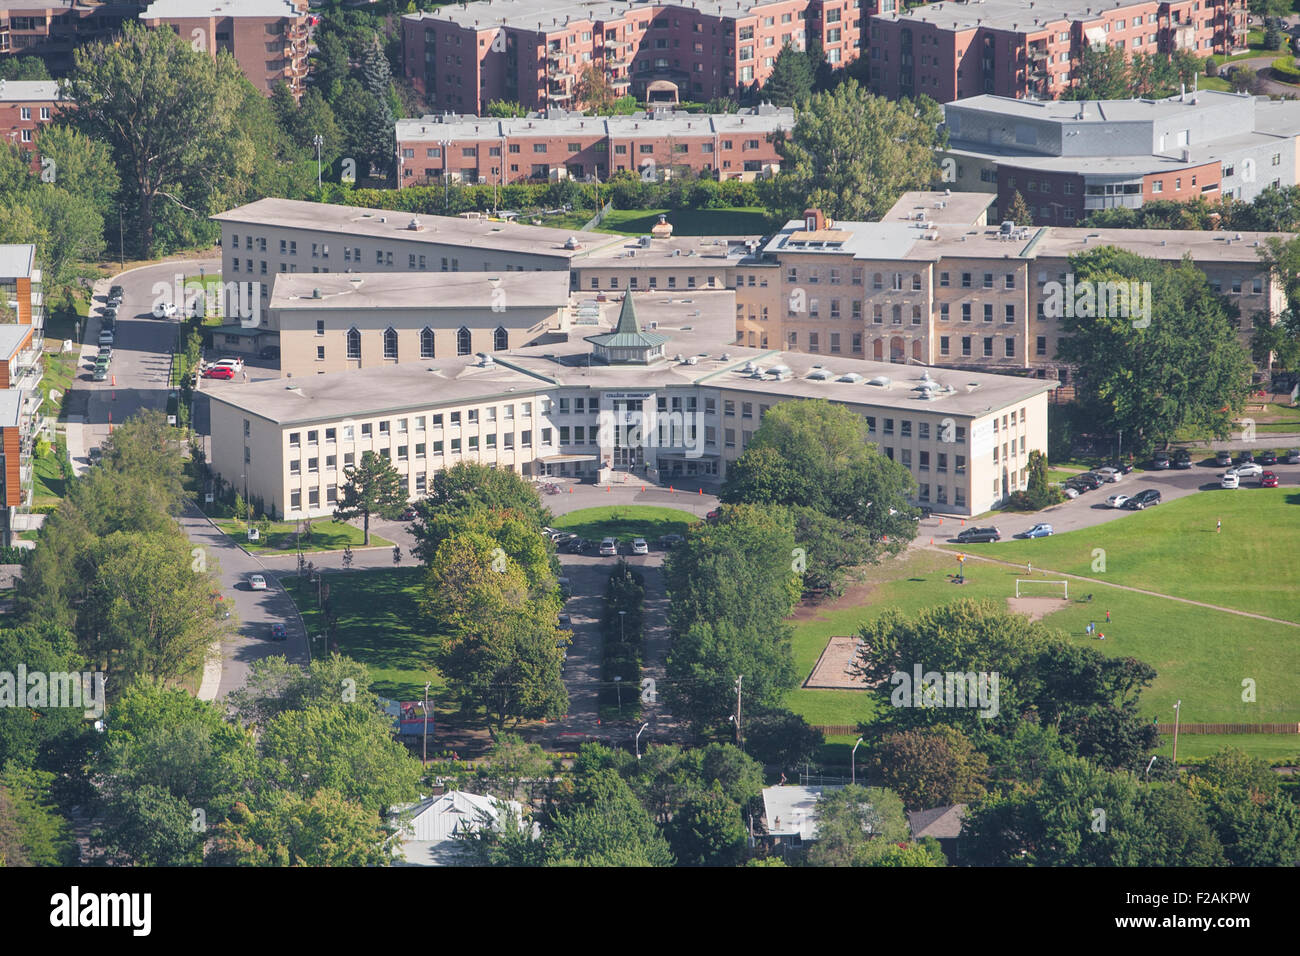 College Stanislas école est représentée dans cette vue aérienne de la ville de Québec Banque D'Images